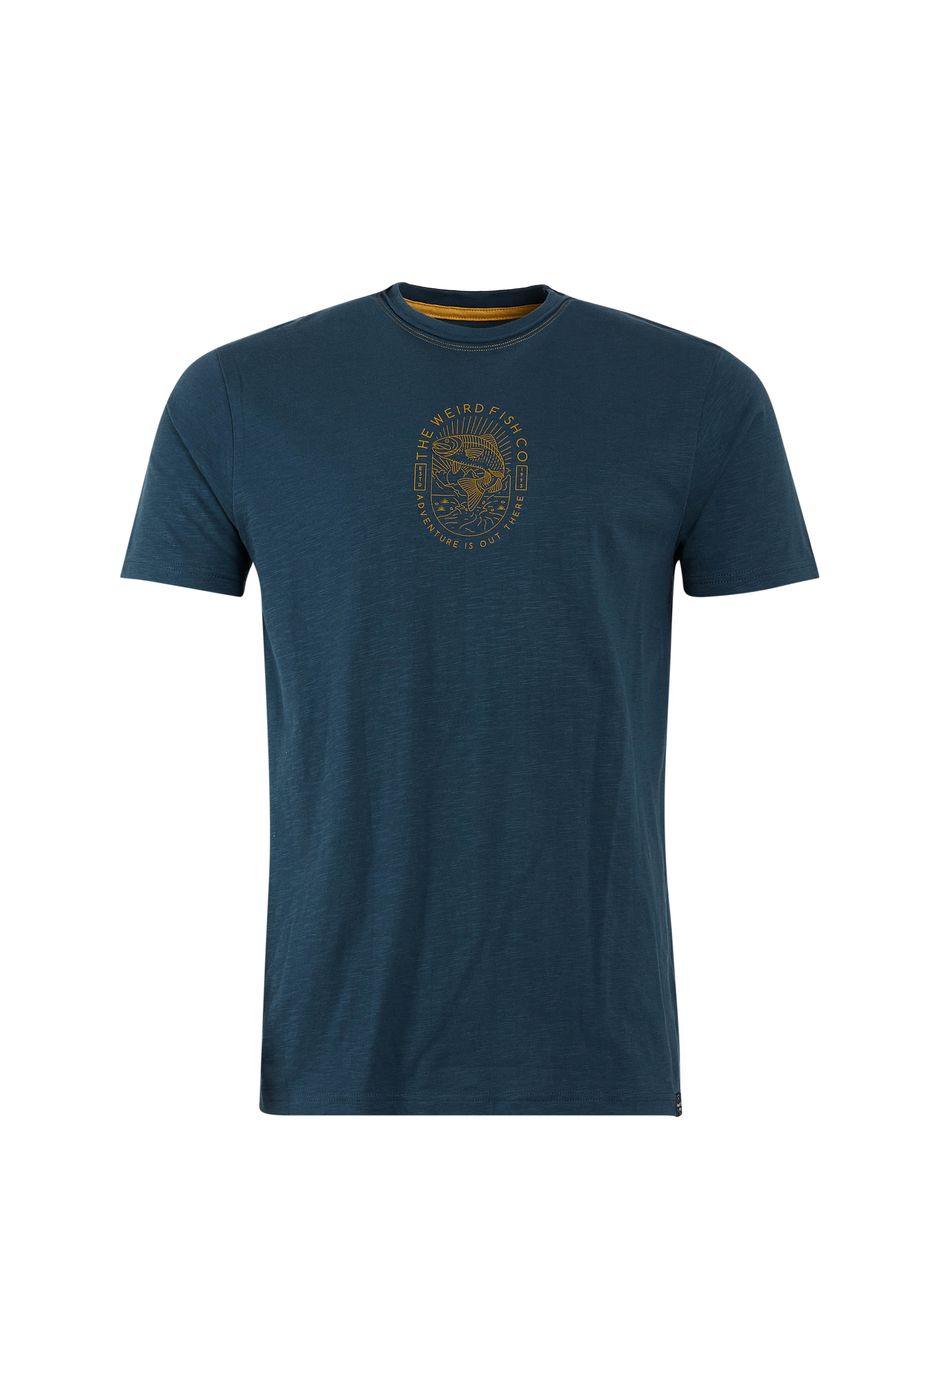 Upstream Organic Cotton Slub Branded Graphic T-Shirt Petrol Blue